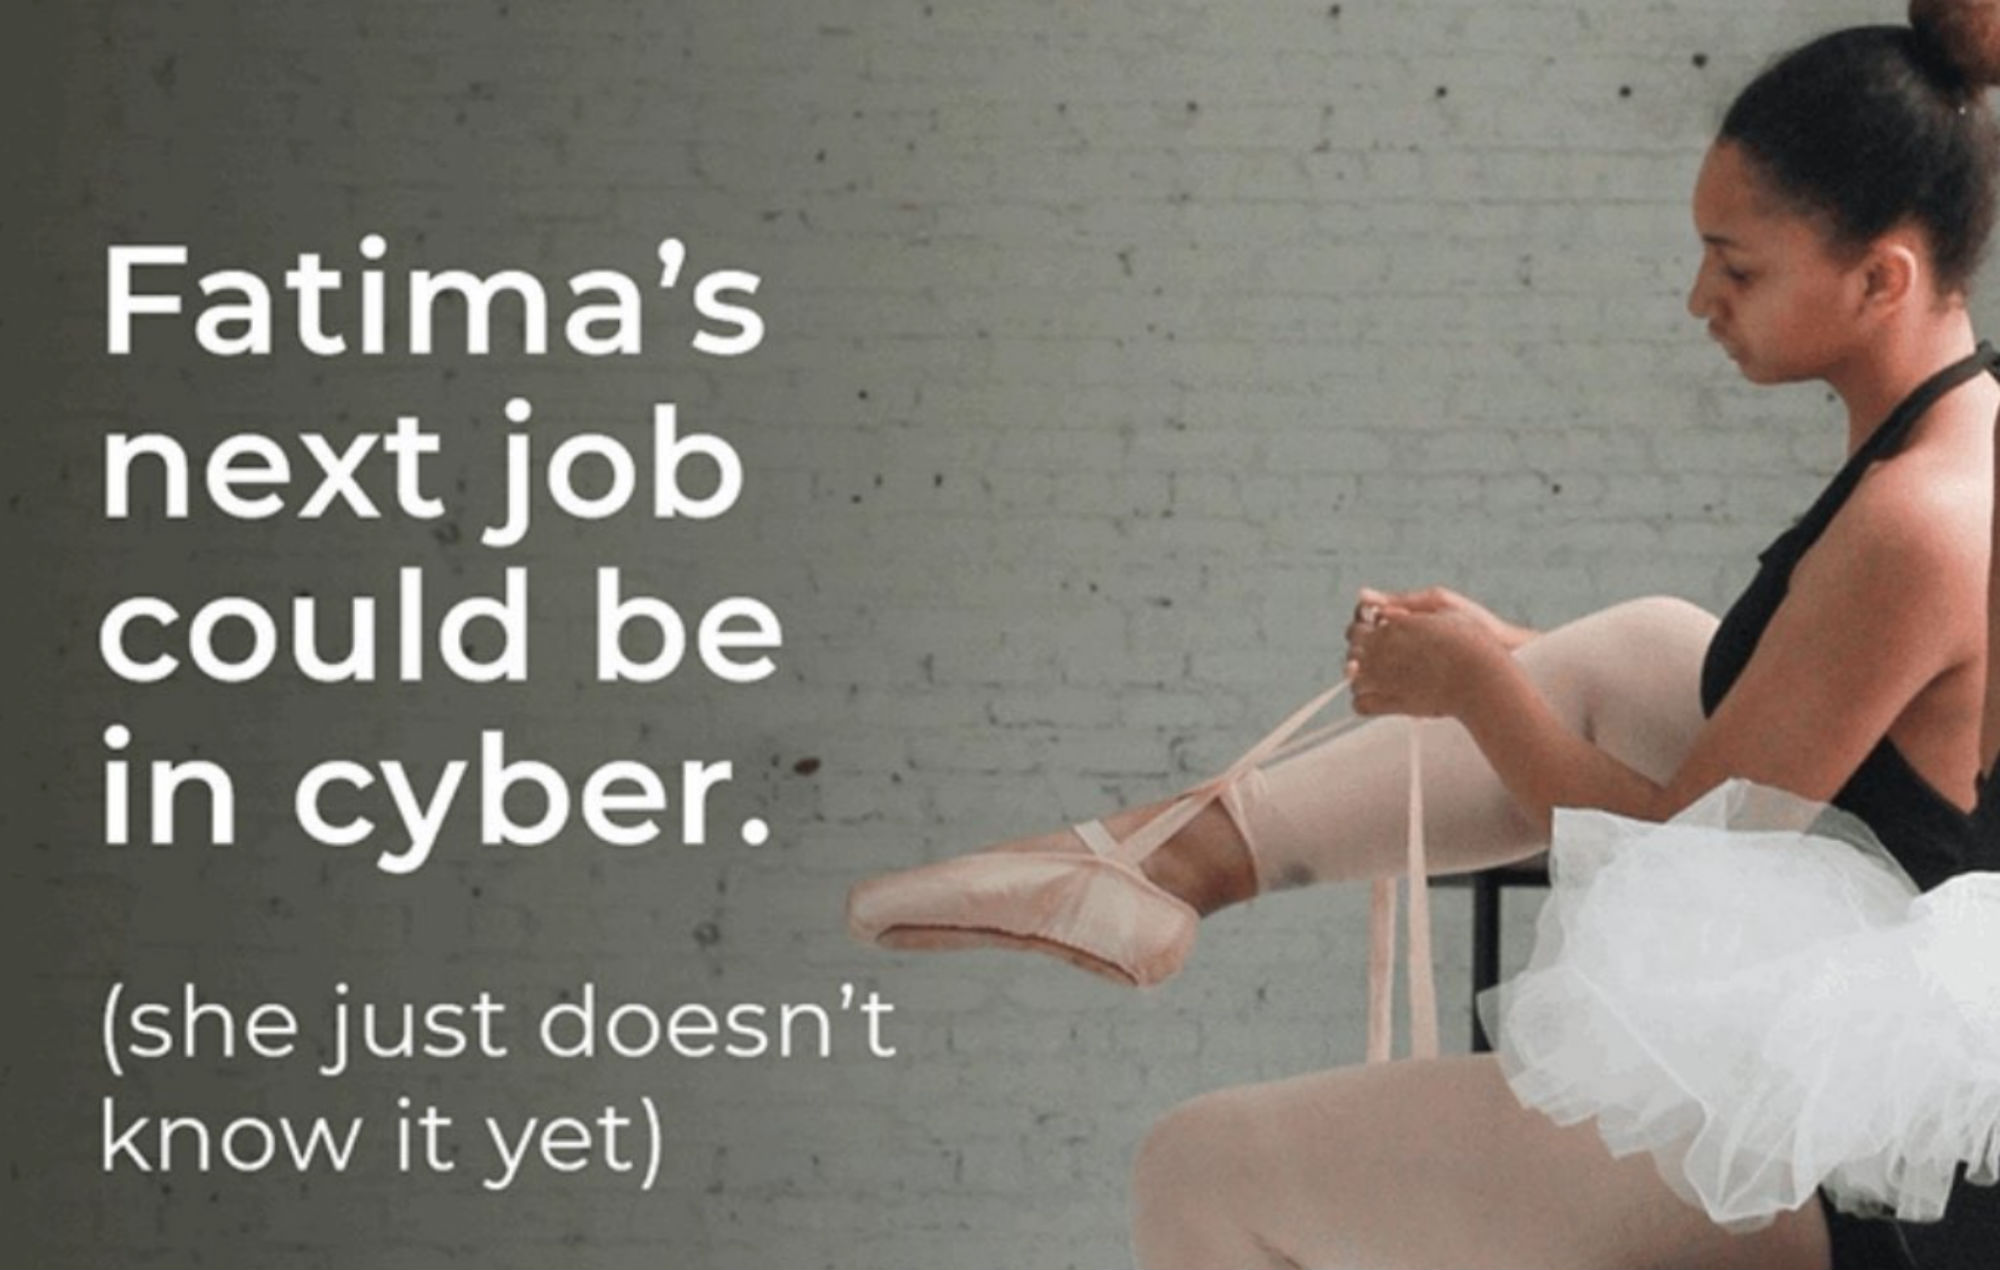 El gobierno retira el anuncio de 'Fátima' que sugiere que la bailarina de ballet debería 